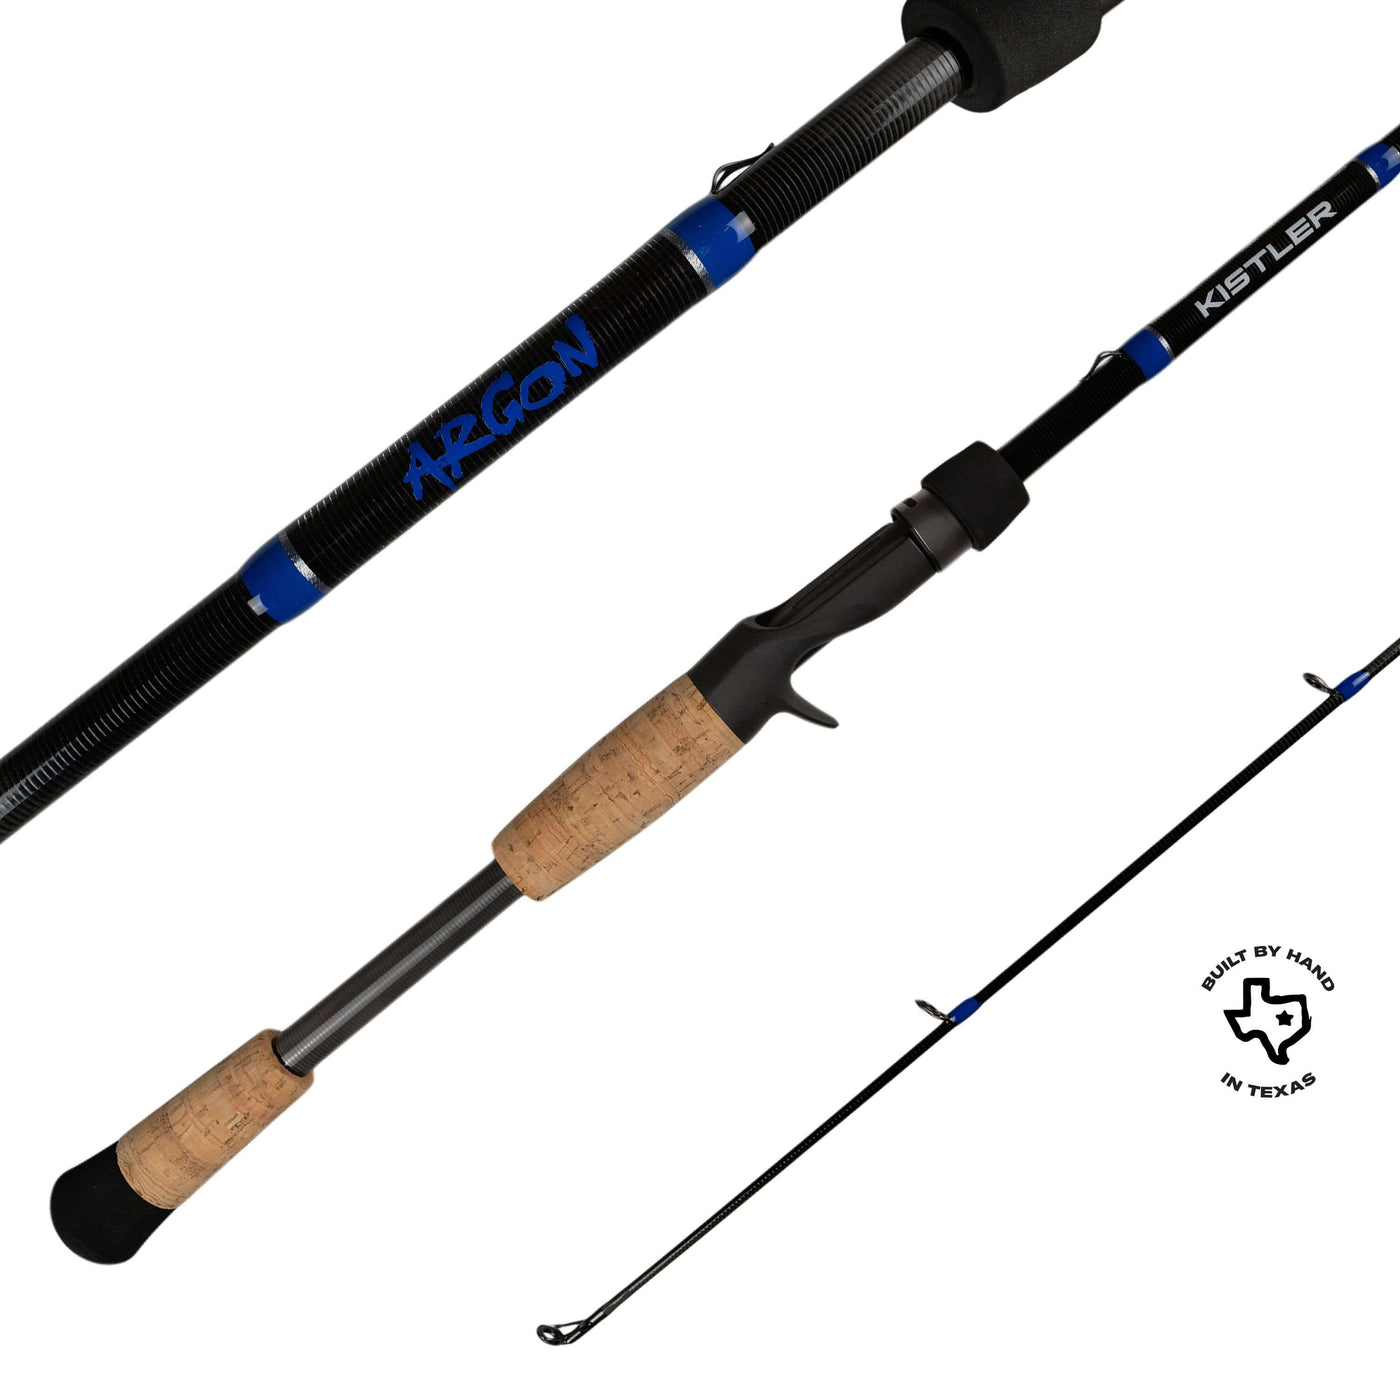 Argon Fishing Rod – KISTLER Fishing